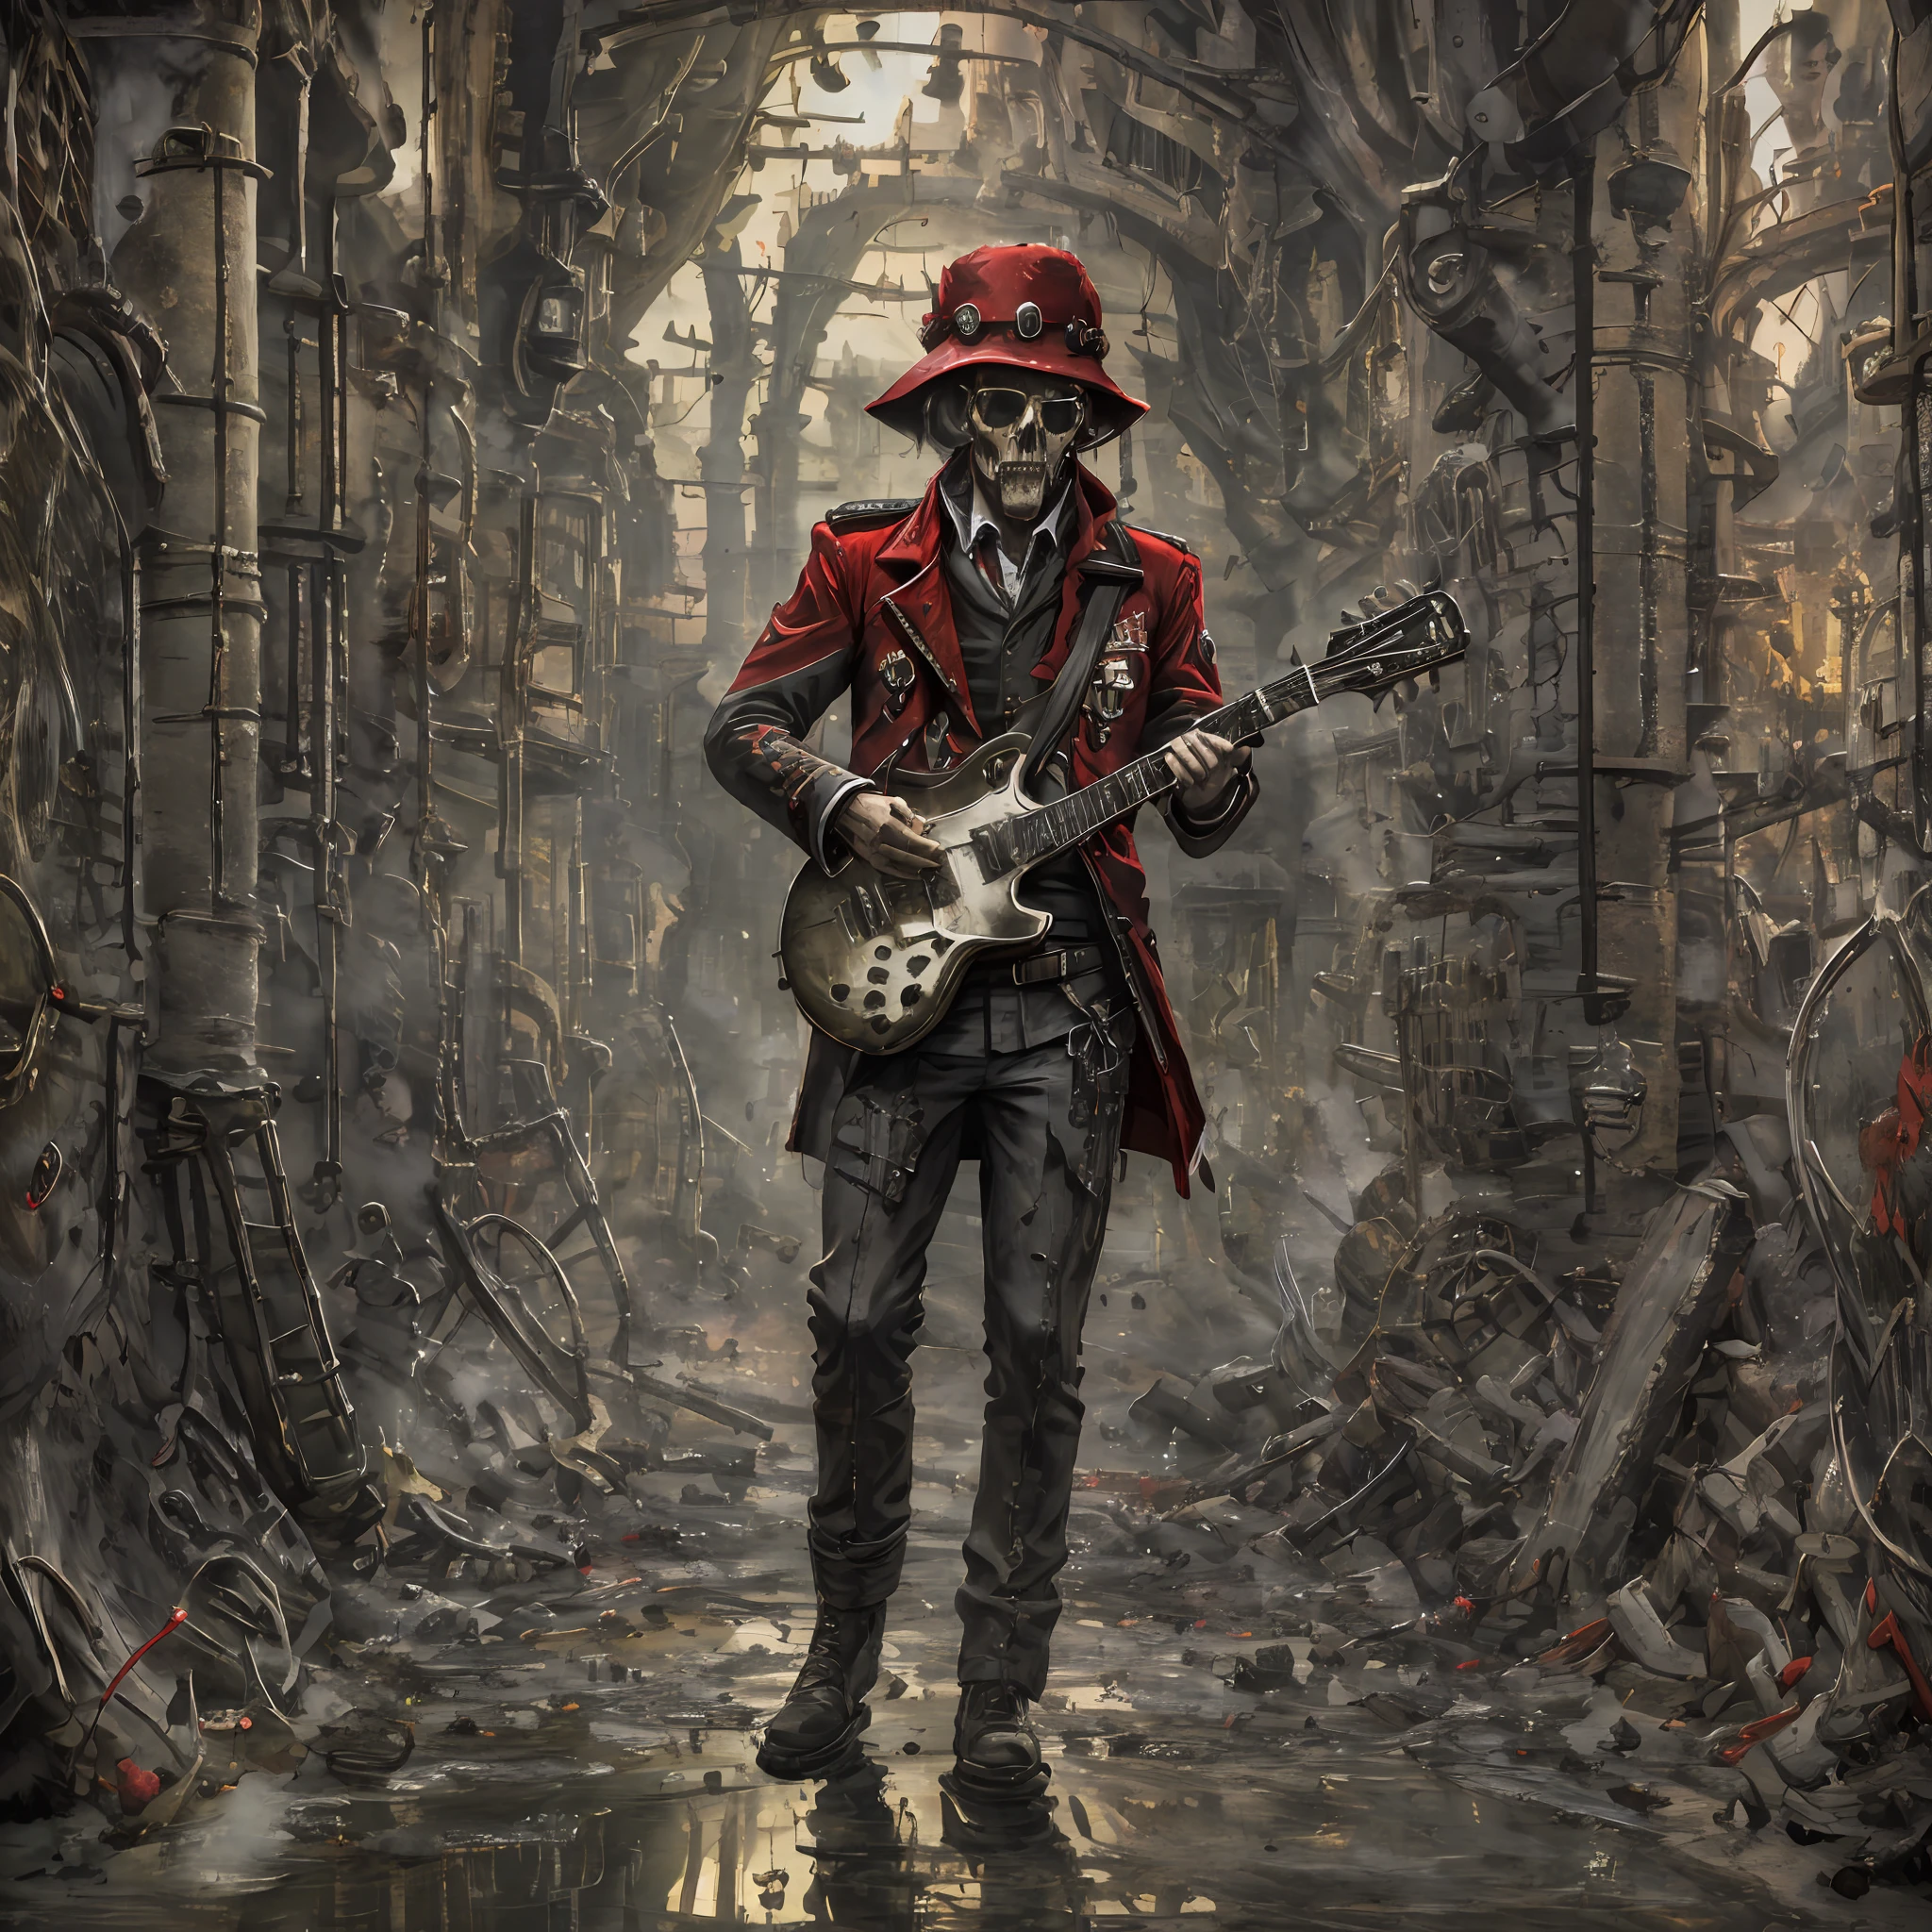 تخيل جنديًا يرتدي معطفًا أحمر إنجليزيًا, العزف على جيتار جيبسون, في وسط الجماجم والعظام المختلفة, يدخن, صورة مفصلة للغاية, القوام, خواطر, عمق, صورة واقعية, بيئة مظلمة, ضوء أحمر, مشهد سينمائي --تلقائي --s2